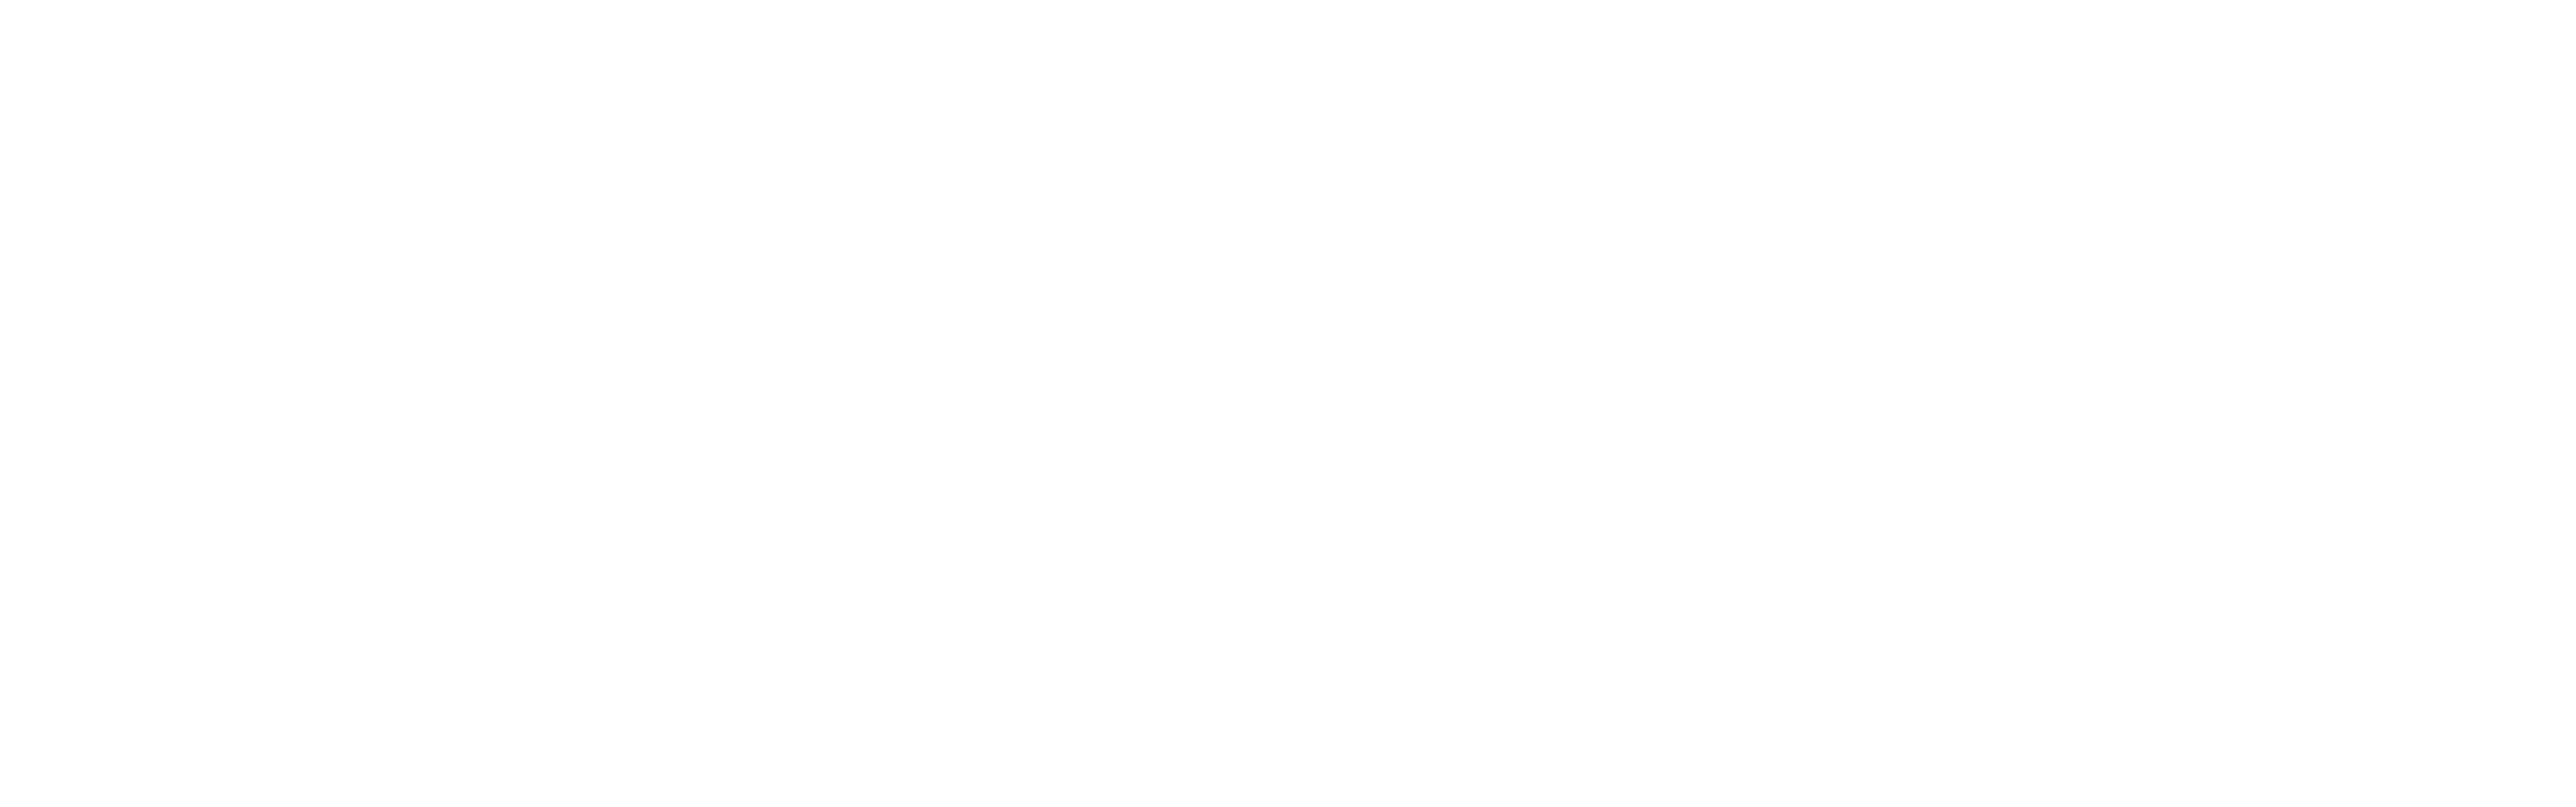 Site Chicago logo